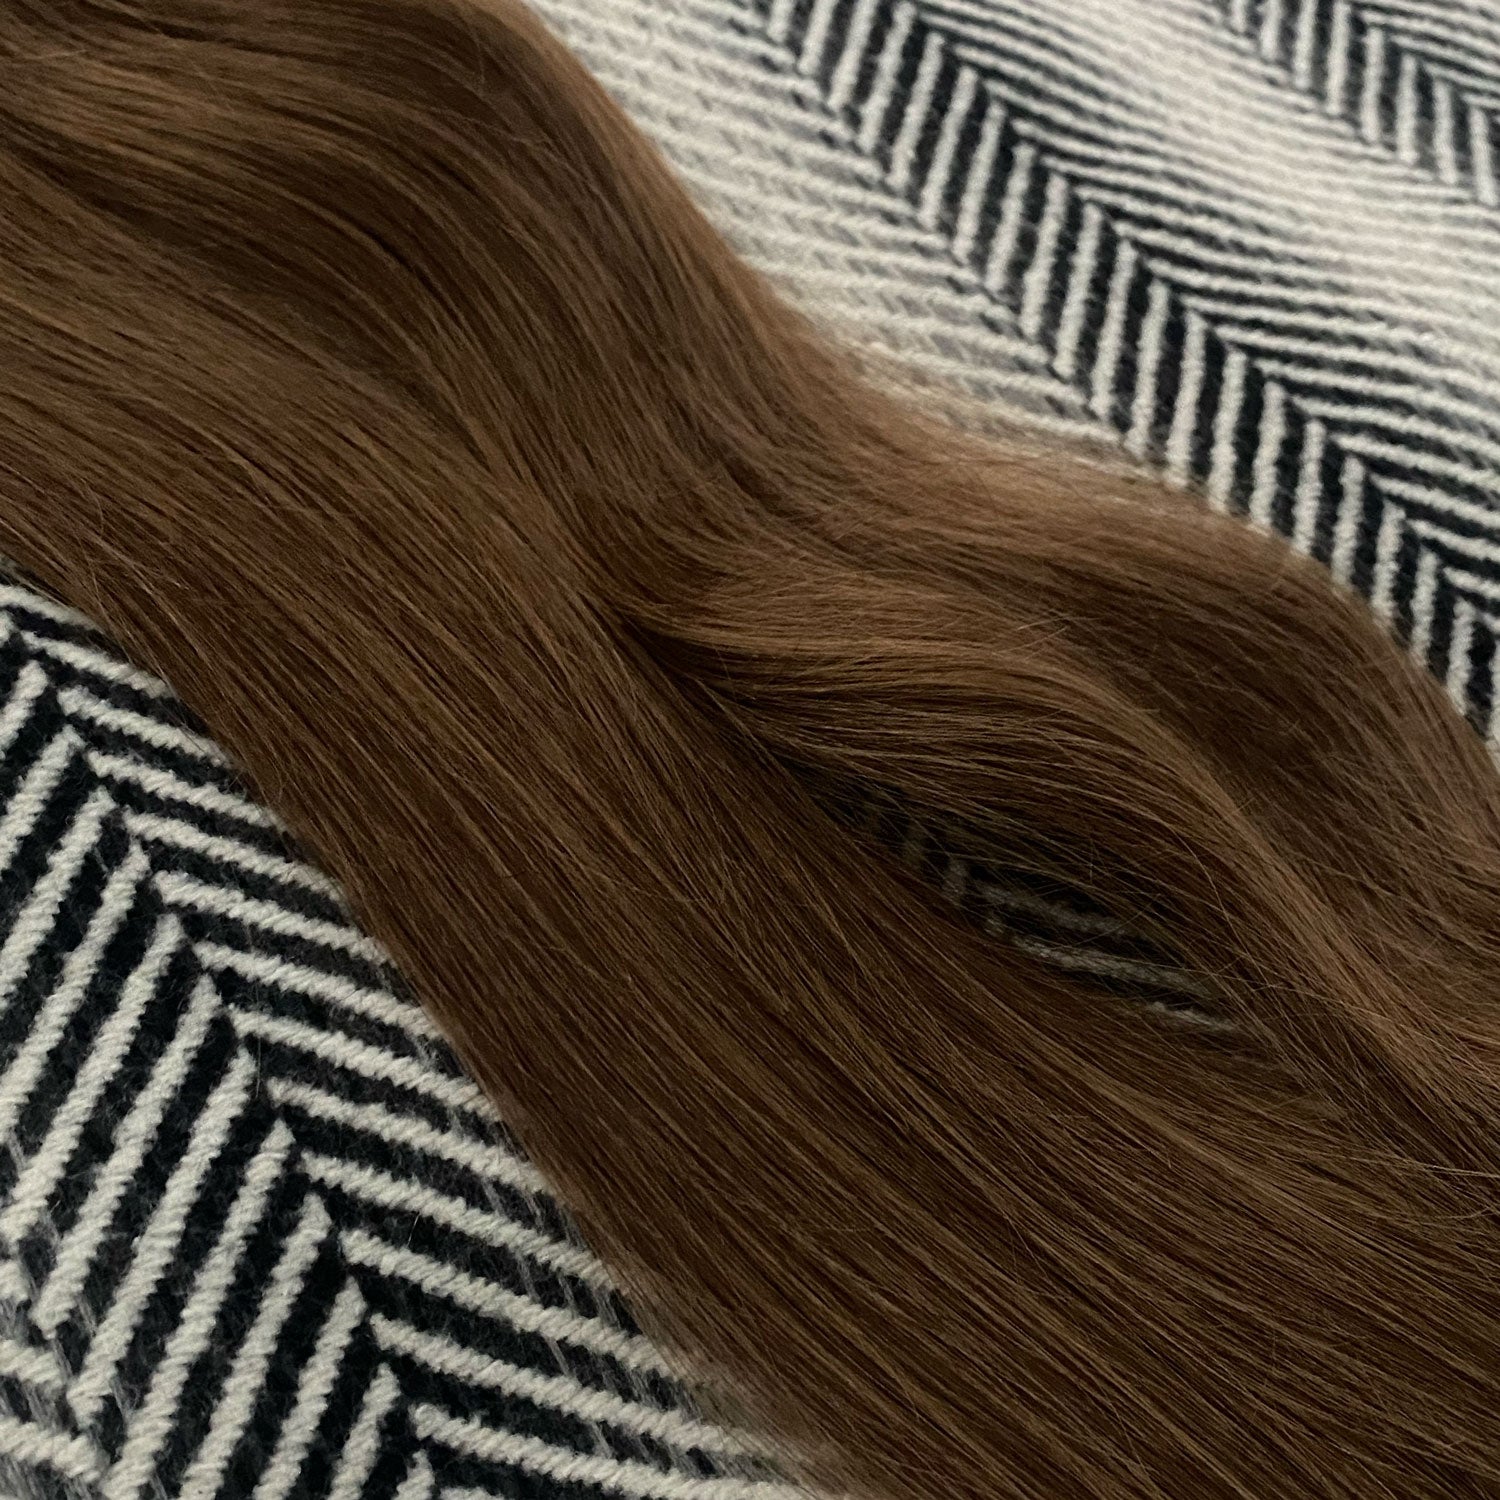 Weft Hair Extensions  #6 Medium Brown 17” 60 Grams